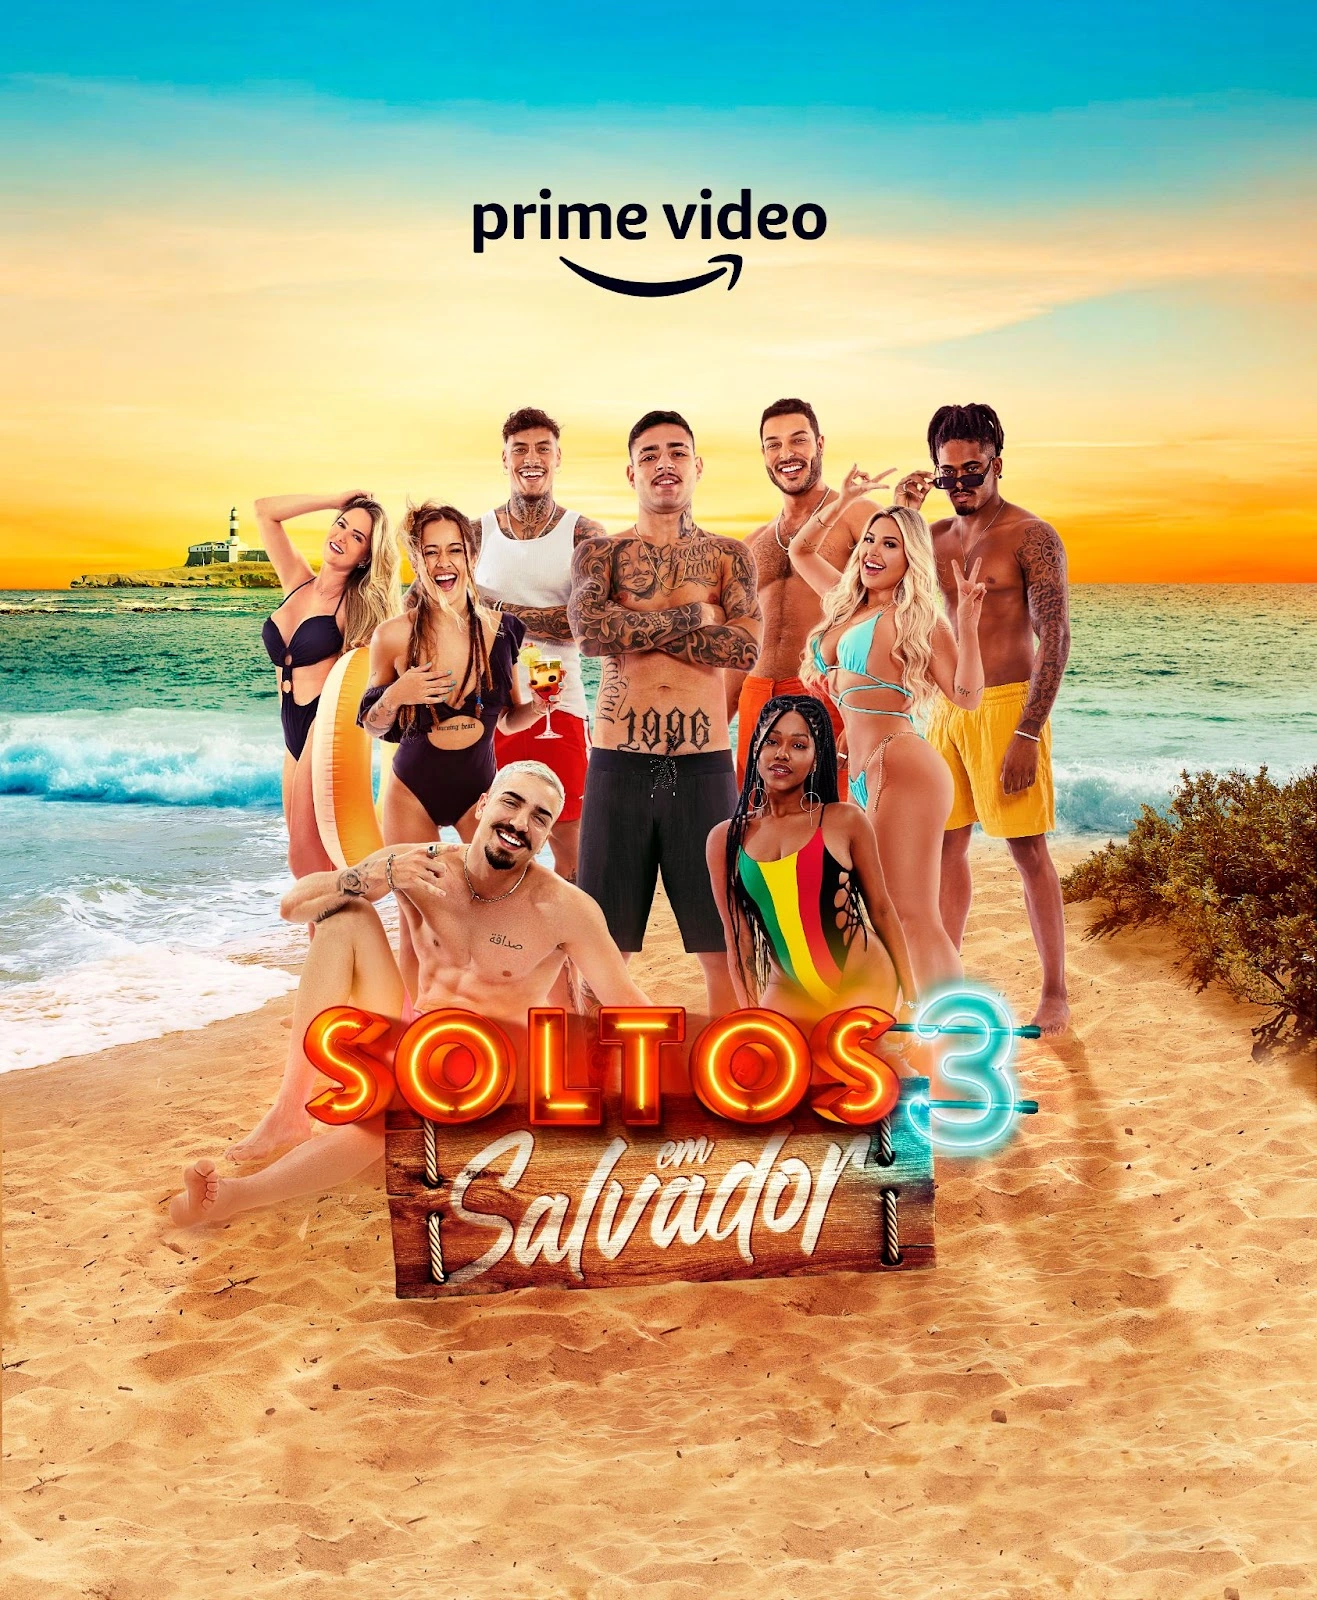 Cartaz da 3ª temporada de Soltos em Salvador.